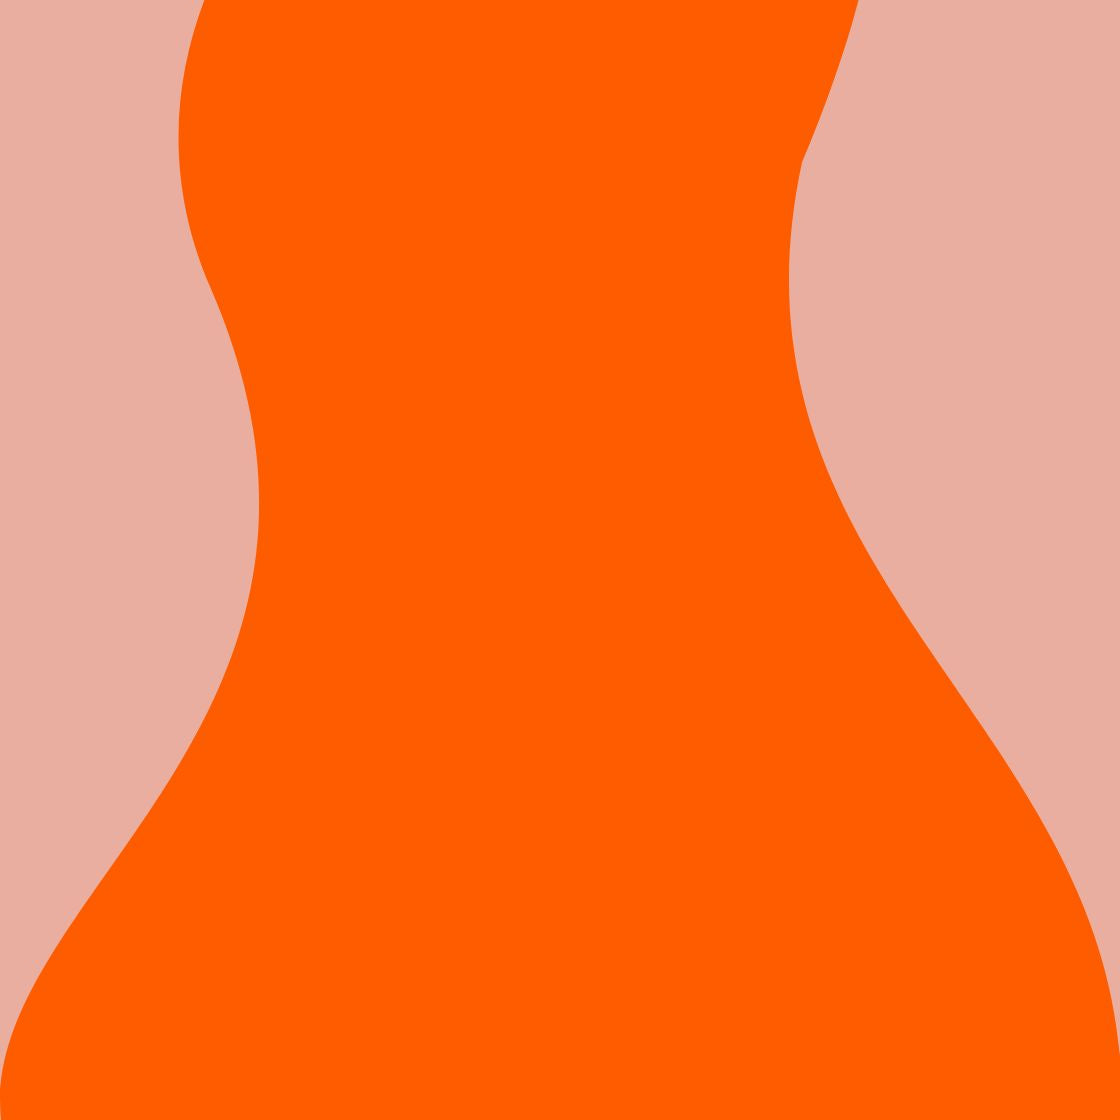 vague–orange-graphique-gapianne-intimité-féminine-femmes-bien-être-ménopause-règles-maternité-périnée-règles douloureuses-saute d'humeur-lochies-bain-dérivatif-postpartum